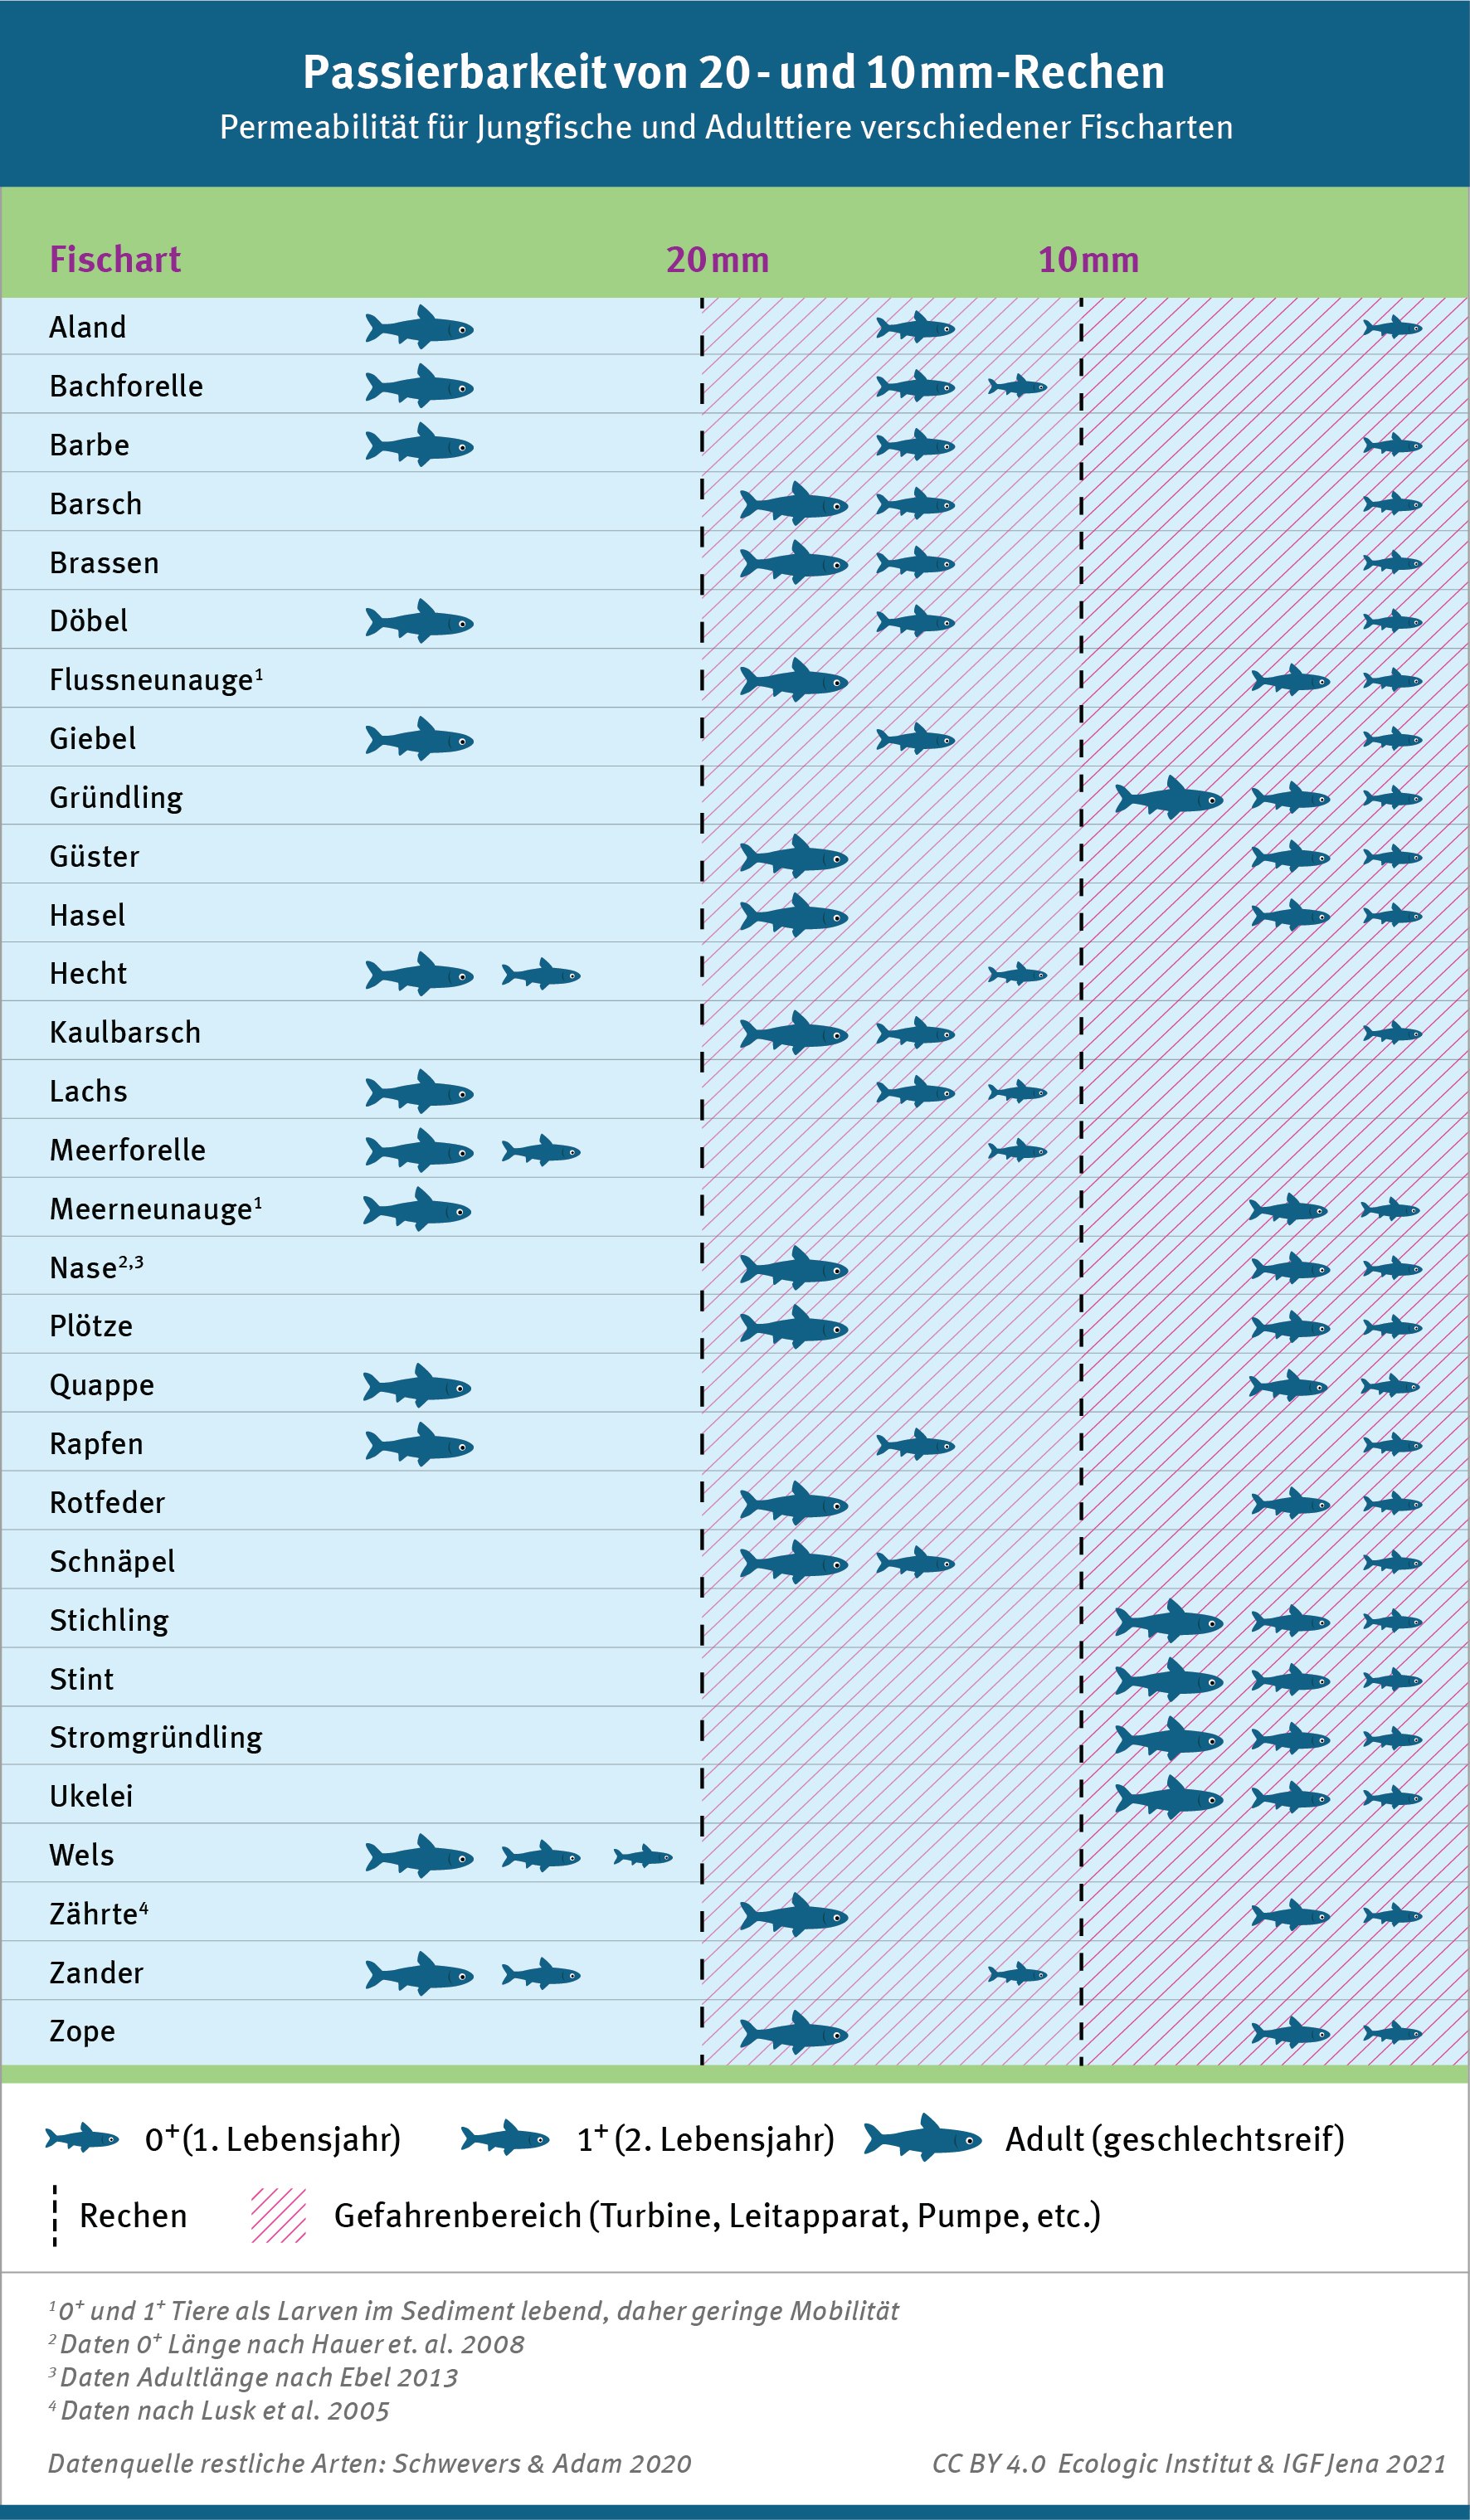 Tabelle die die Permeabilität für Jungfische und Adulttiere verschiedener Fischarten anzeigt